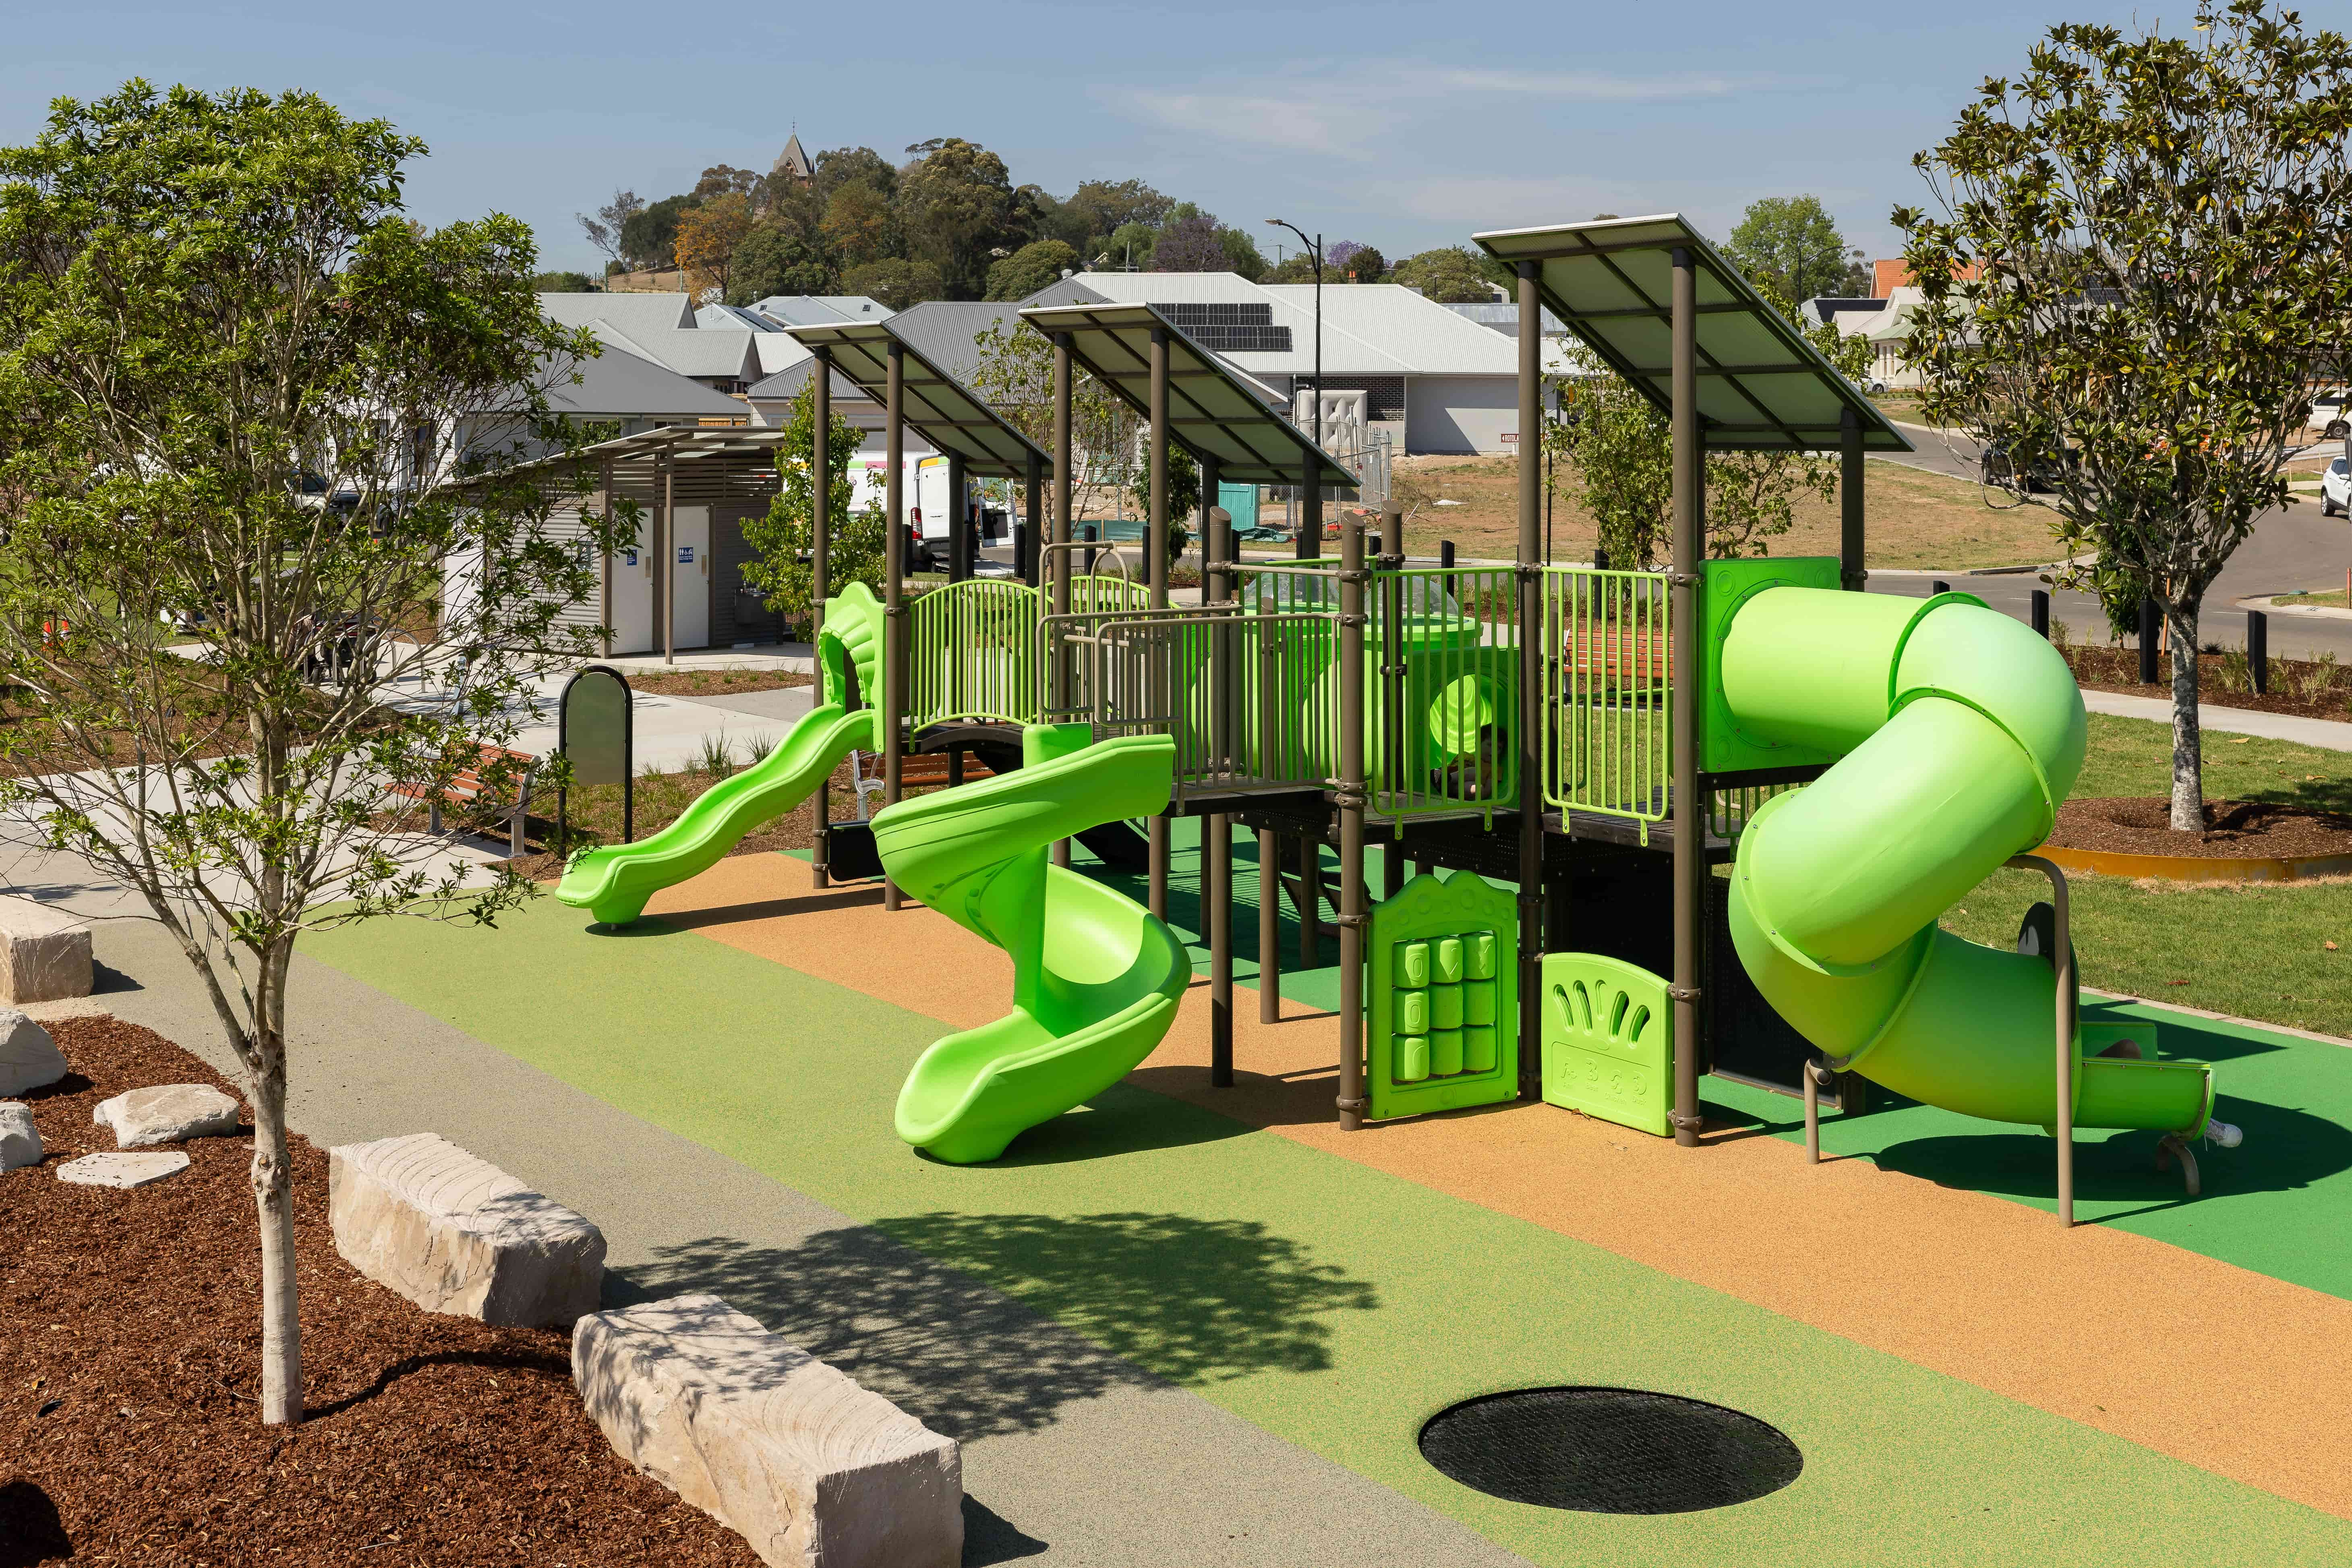 Rotolactor Park Playground